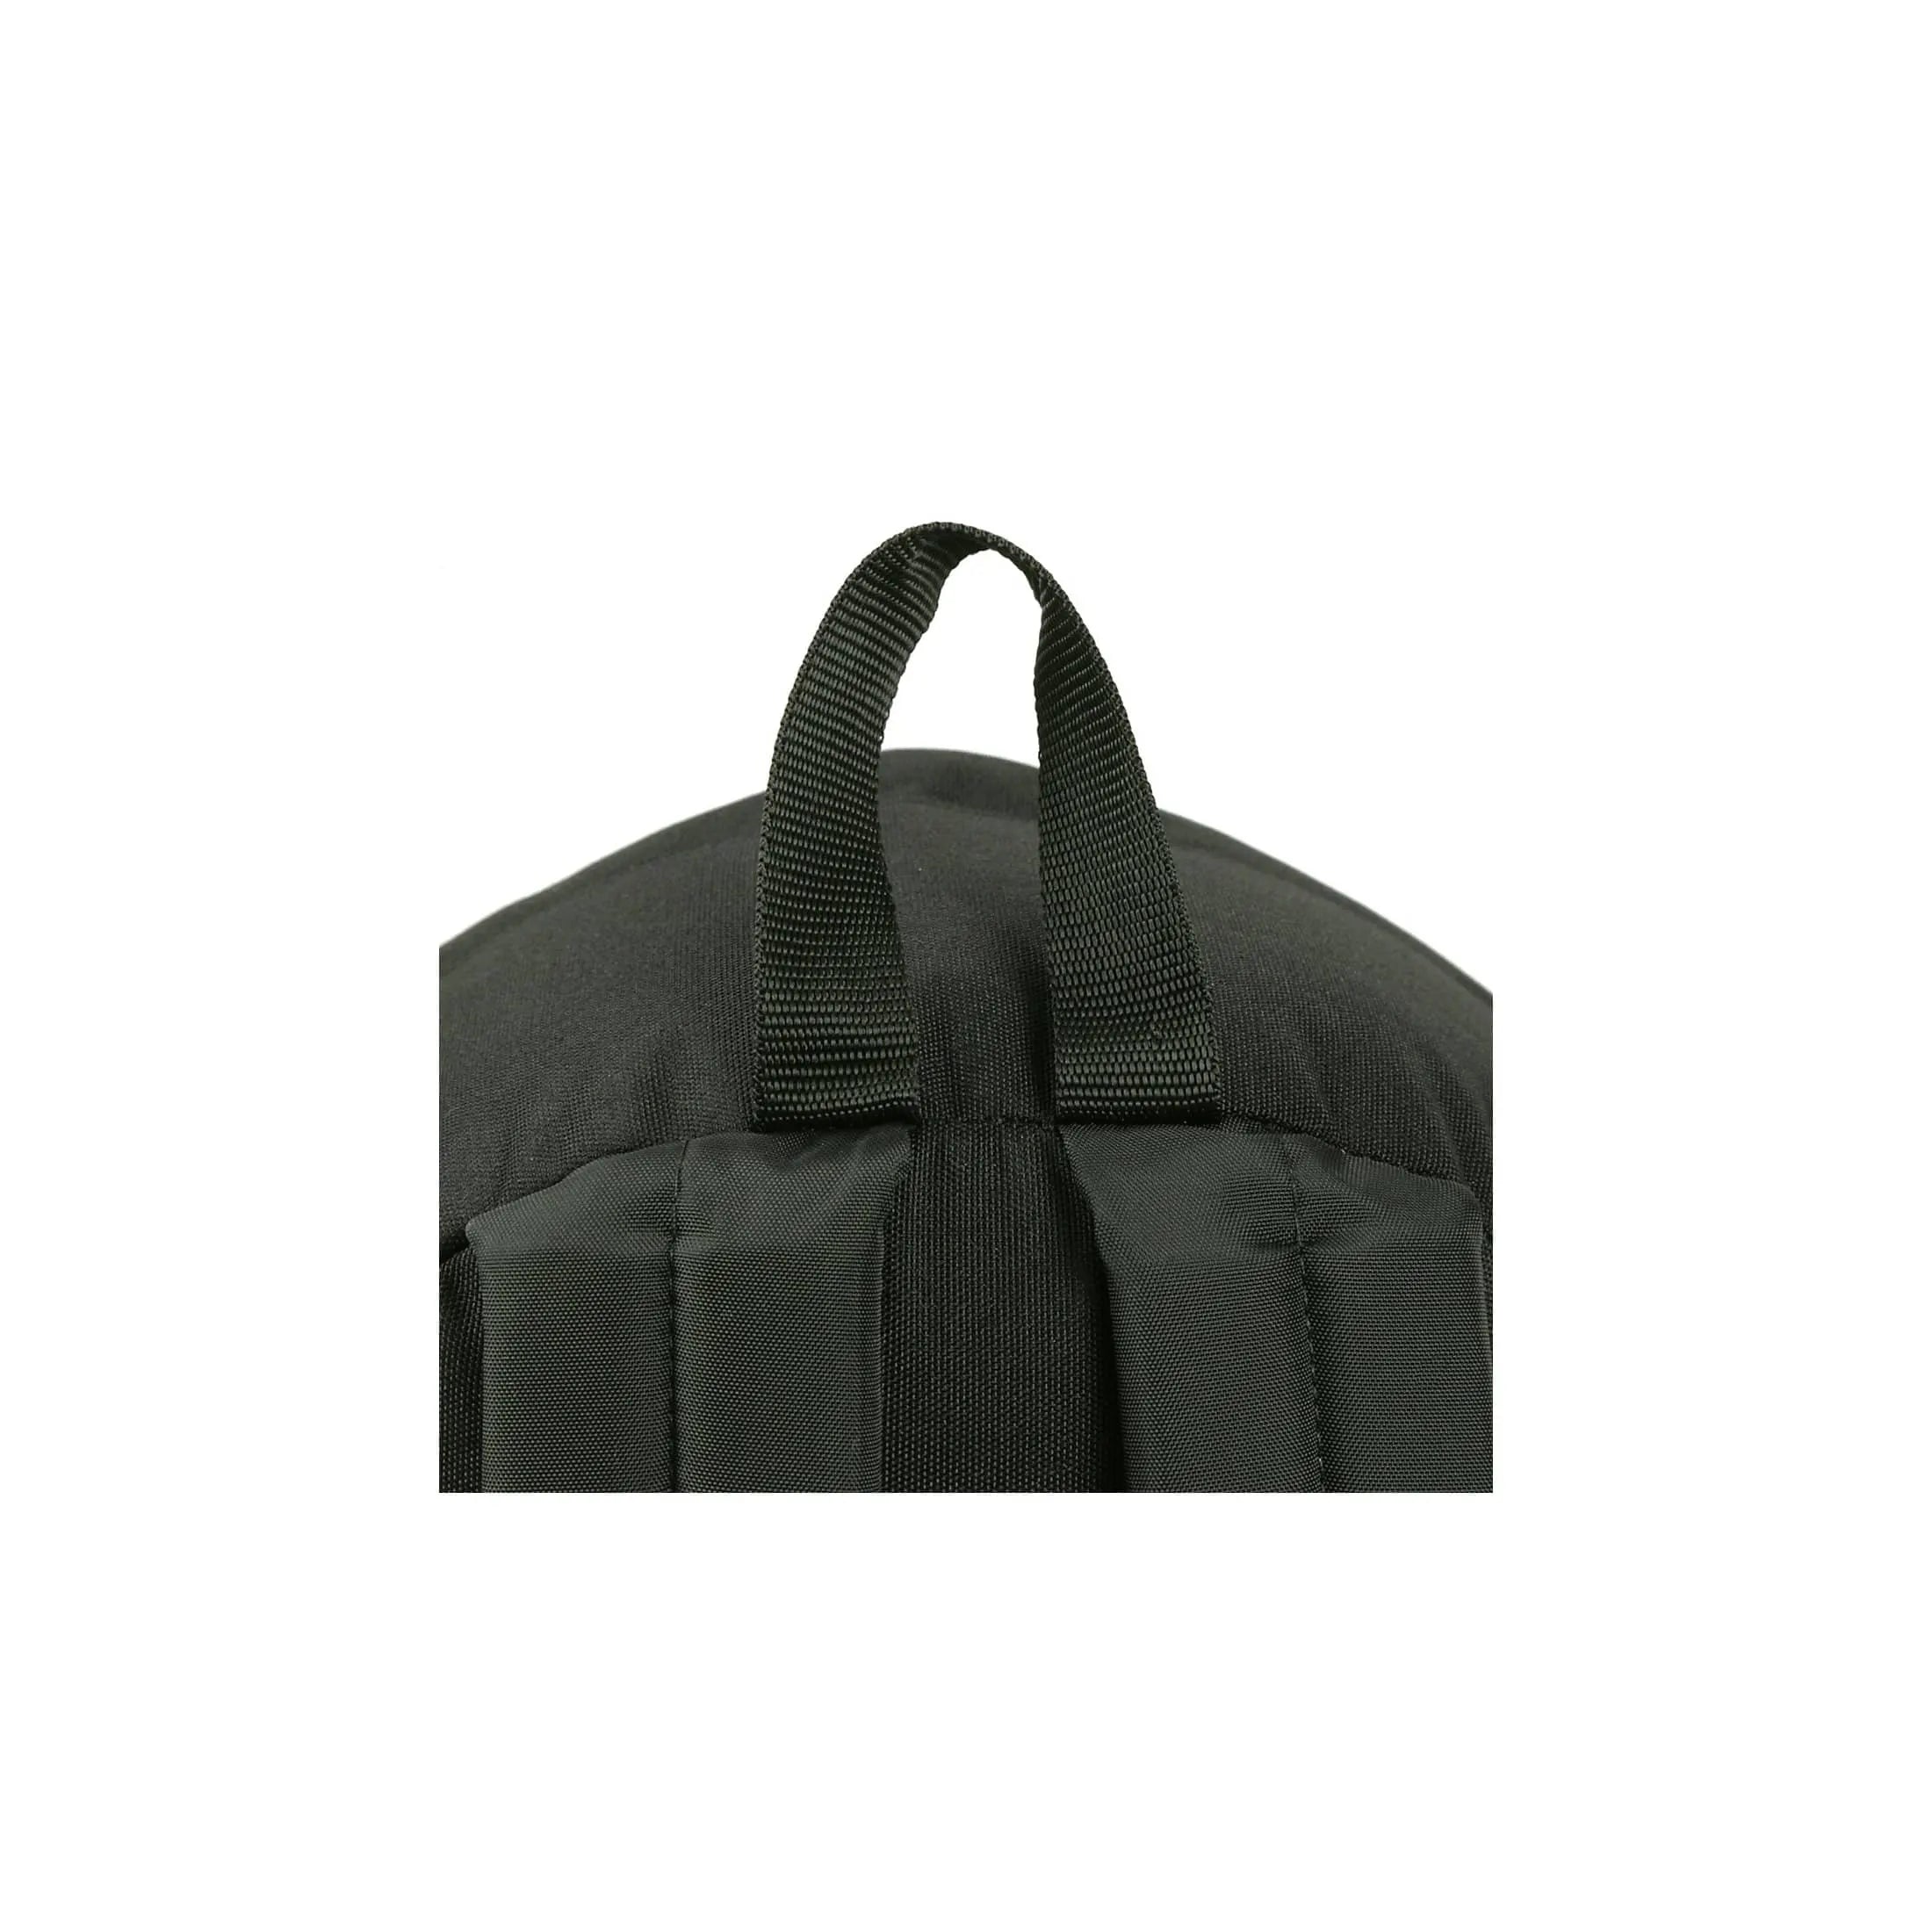 Eastpak Authentic Paded Pak'r sac à dos de loisirs 41 cm - camouflage